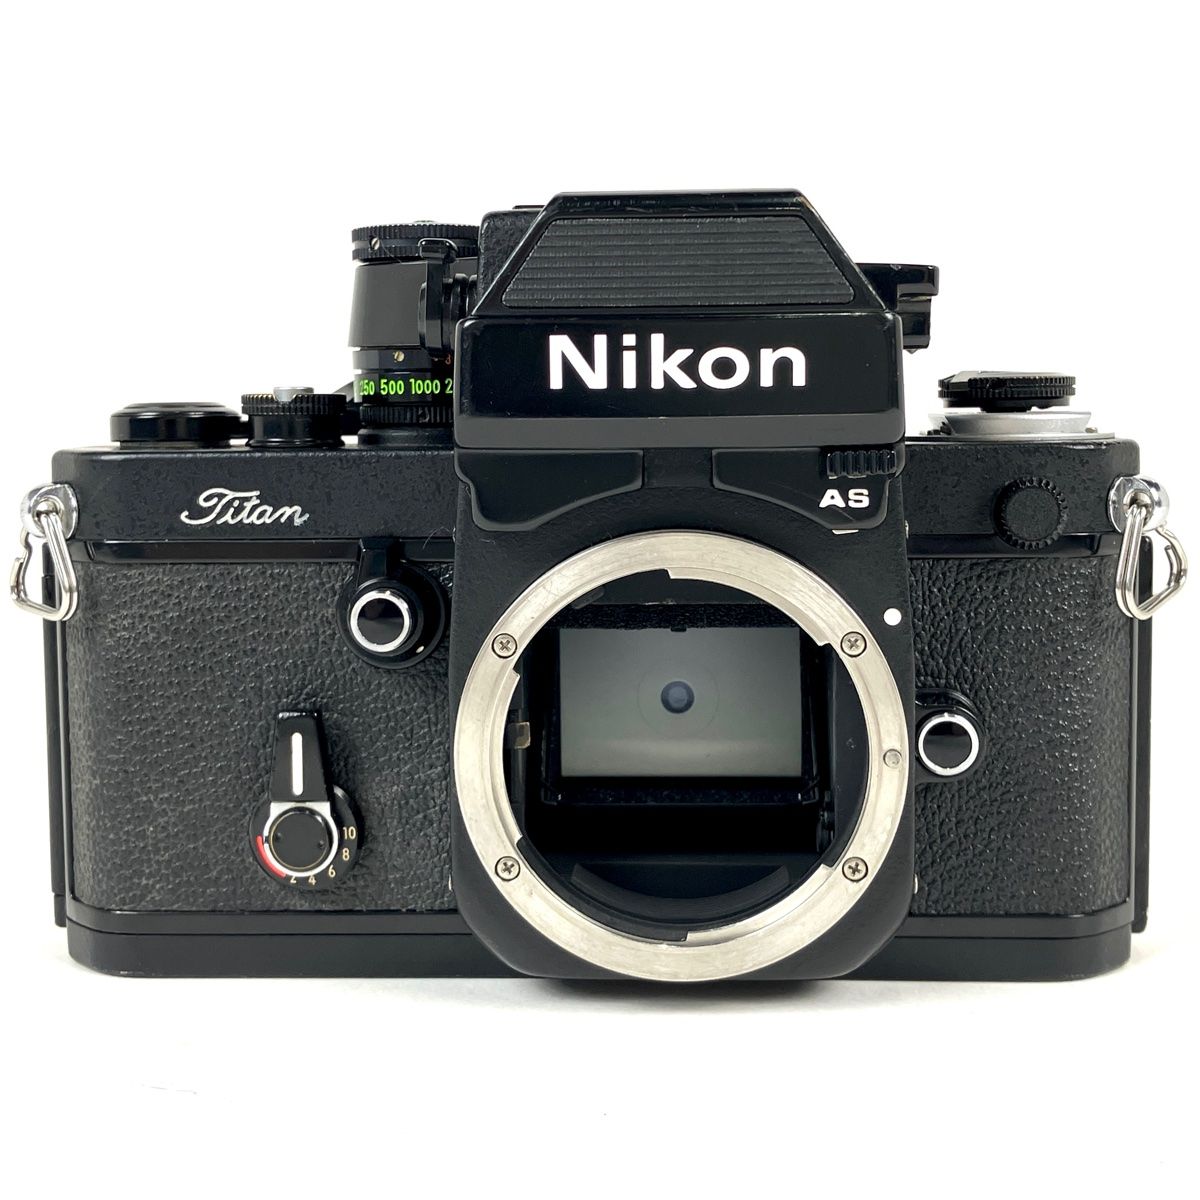 ニコン Nikon F2 フォトミック AS チタン ボディ Titan フィルム